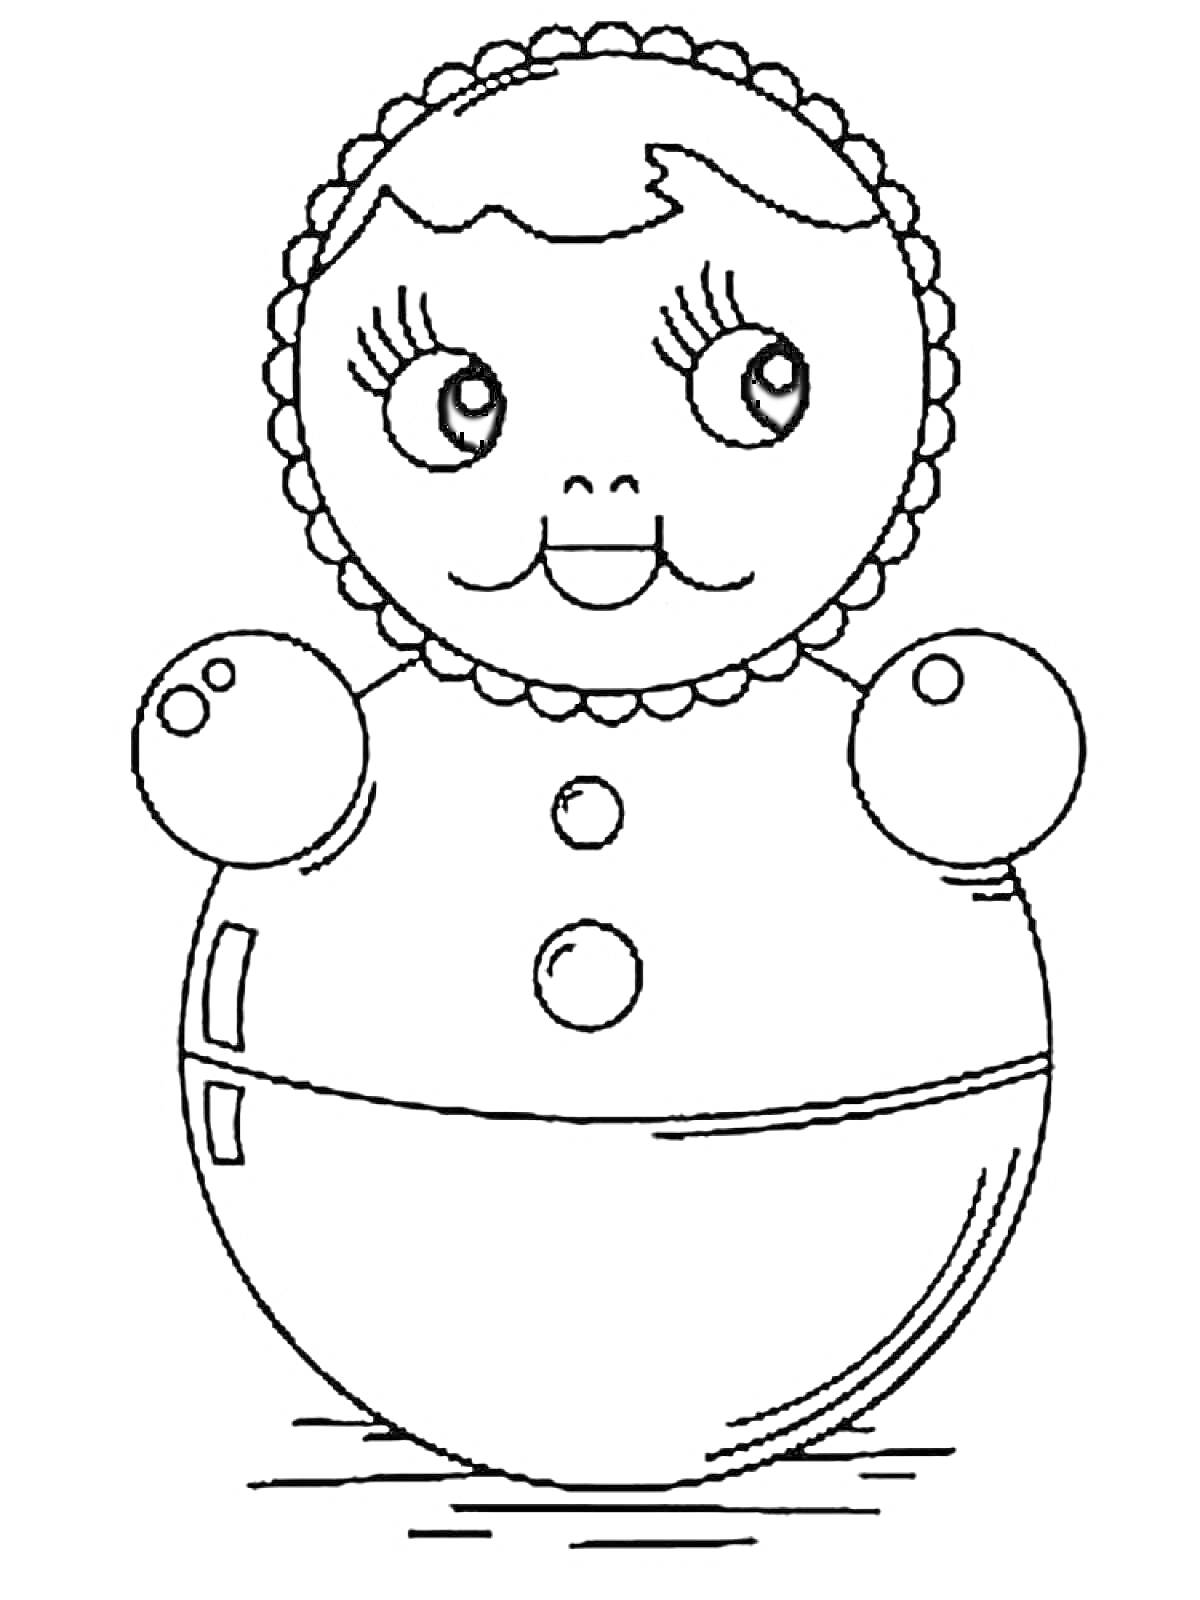 Неваляшка с круглой головой, улыбающимся лицом, глазками и румяными щёчками, в цветочном ободке, с двумя пуговицами на теле